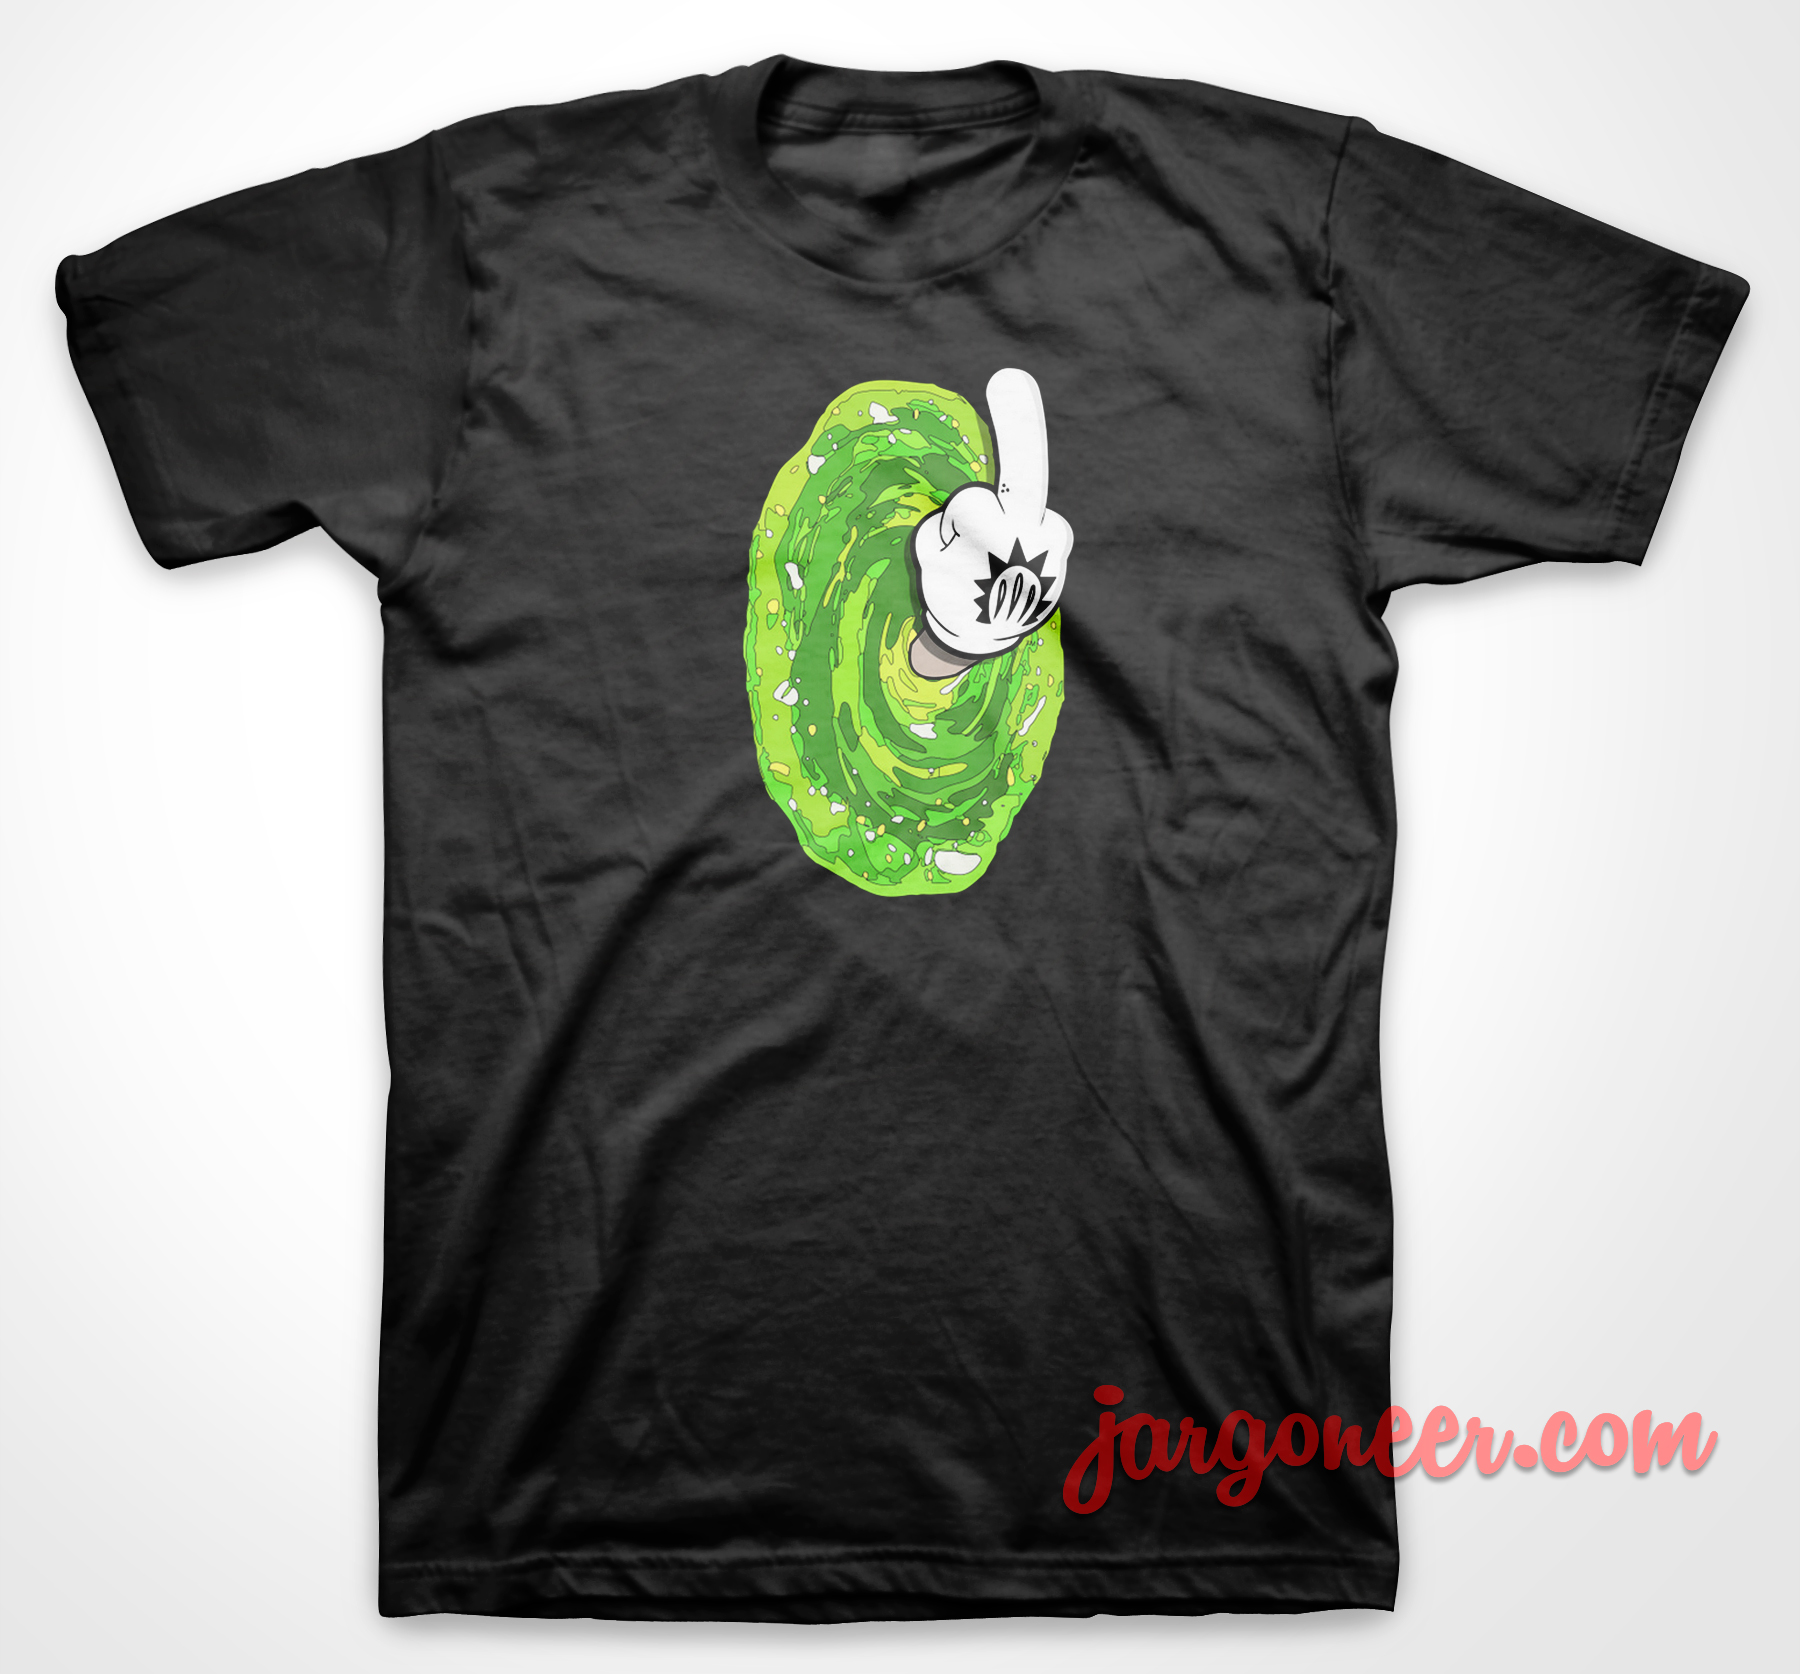 Ricky Mouse - Shop Unique Graphic Cool Shirt Designs